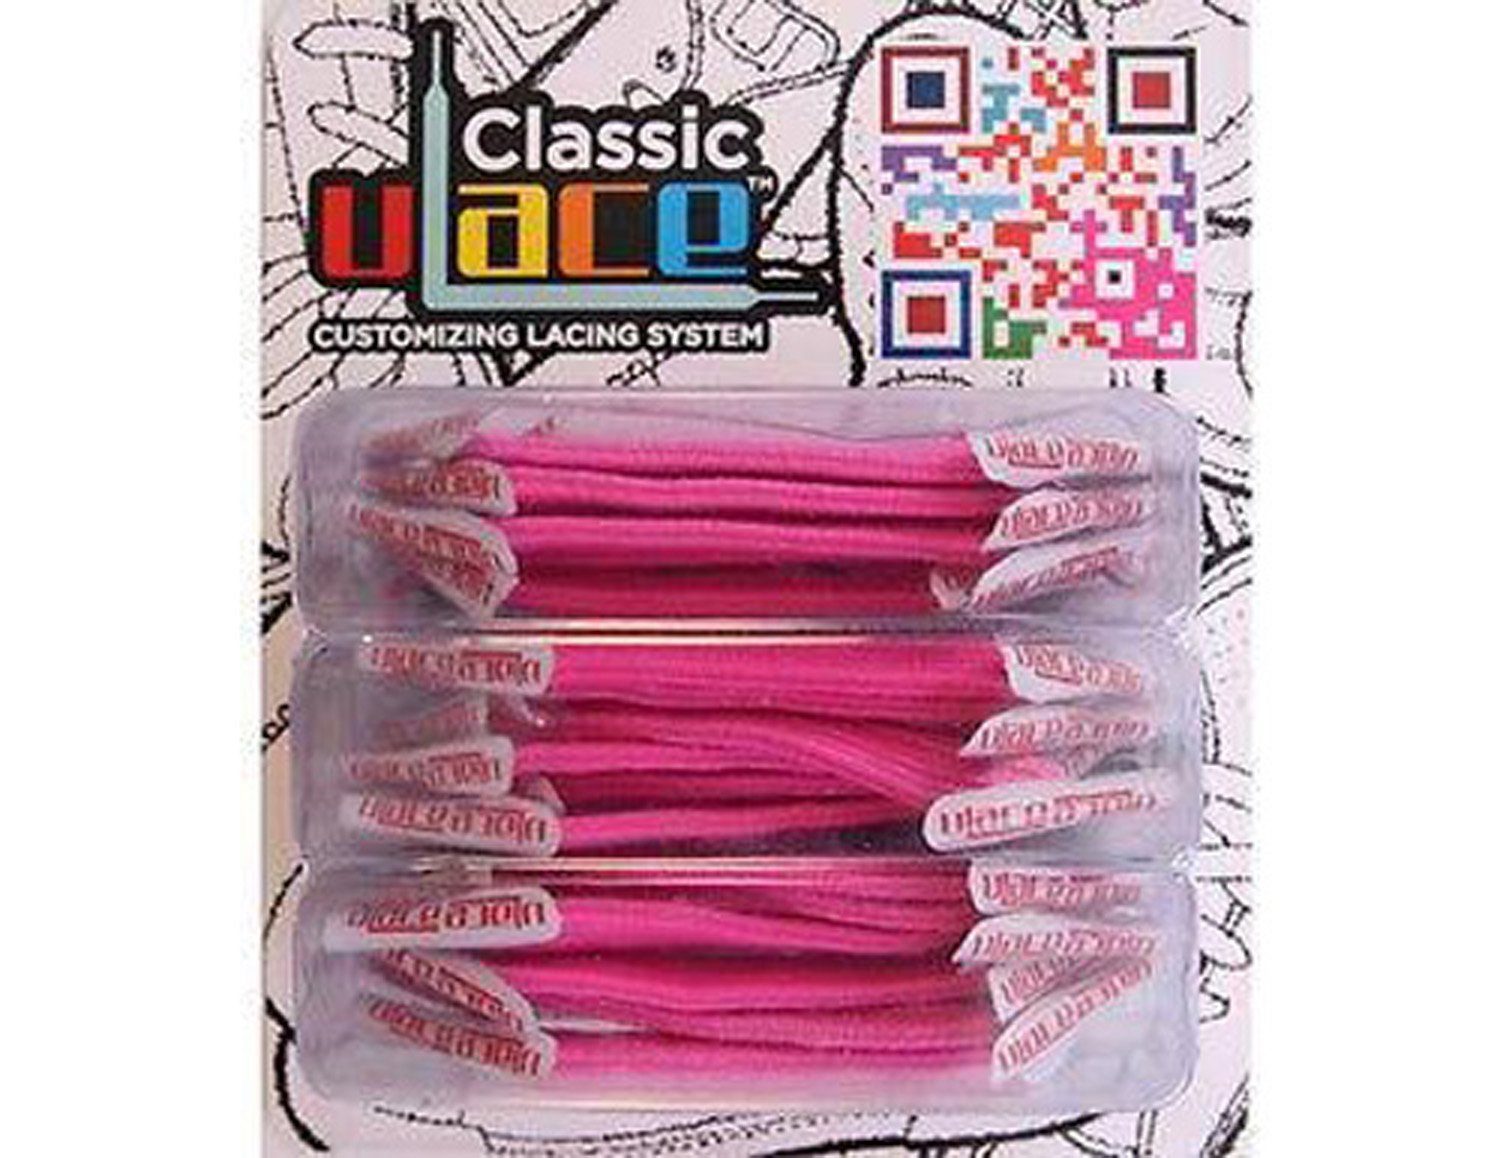 18 U-Laces Wiederhaken Stück Pink Schnürsenkel Classic - Schnürsenkel mit Hot elastische